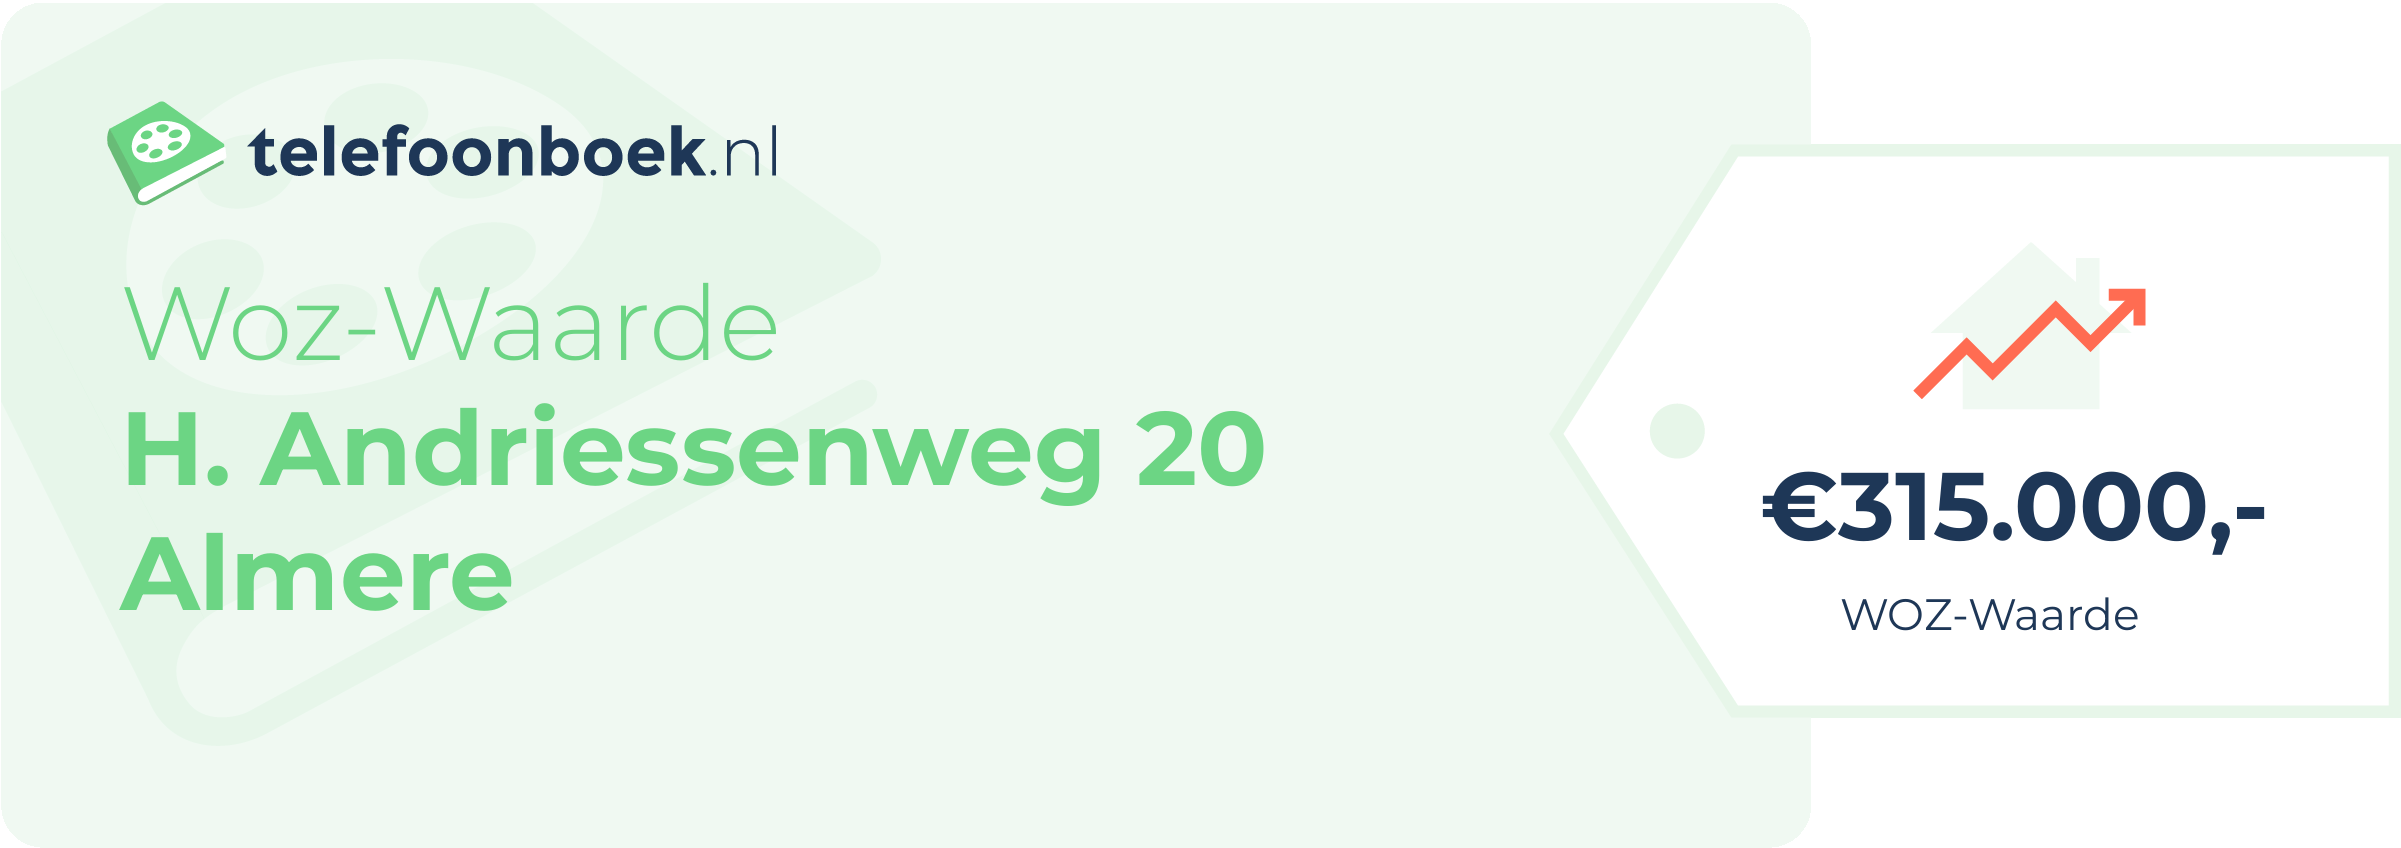 WOZ-waarde H. Andriessenweg 20 Almere